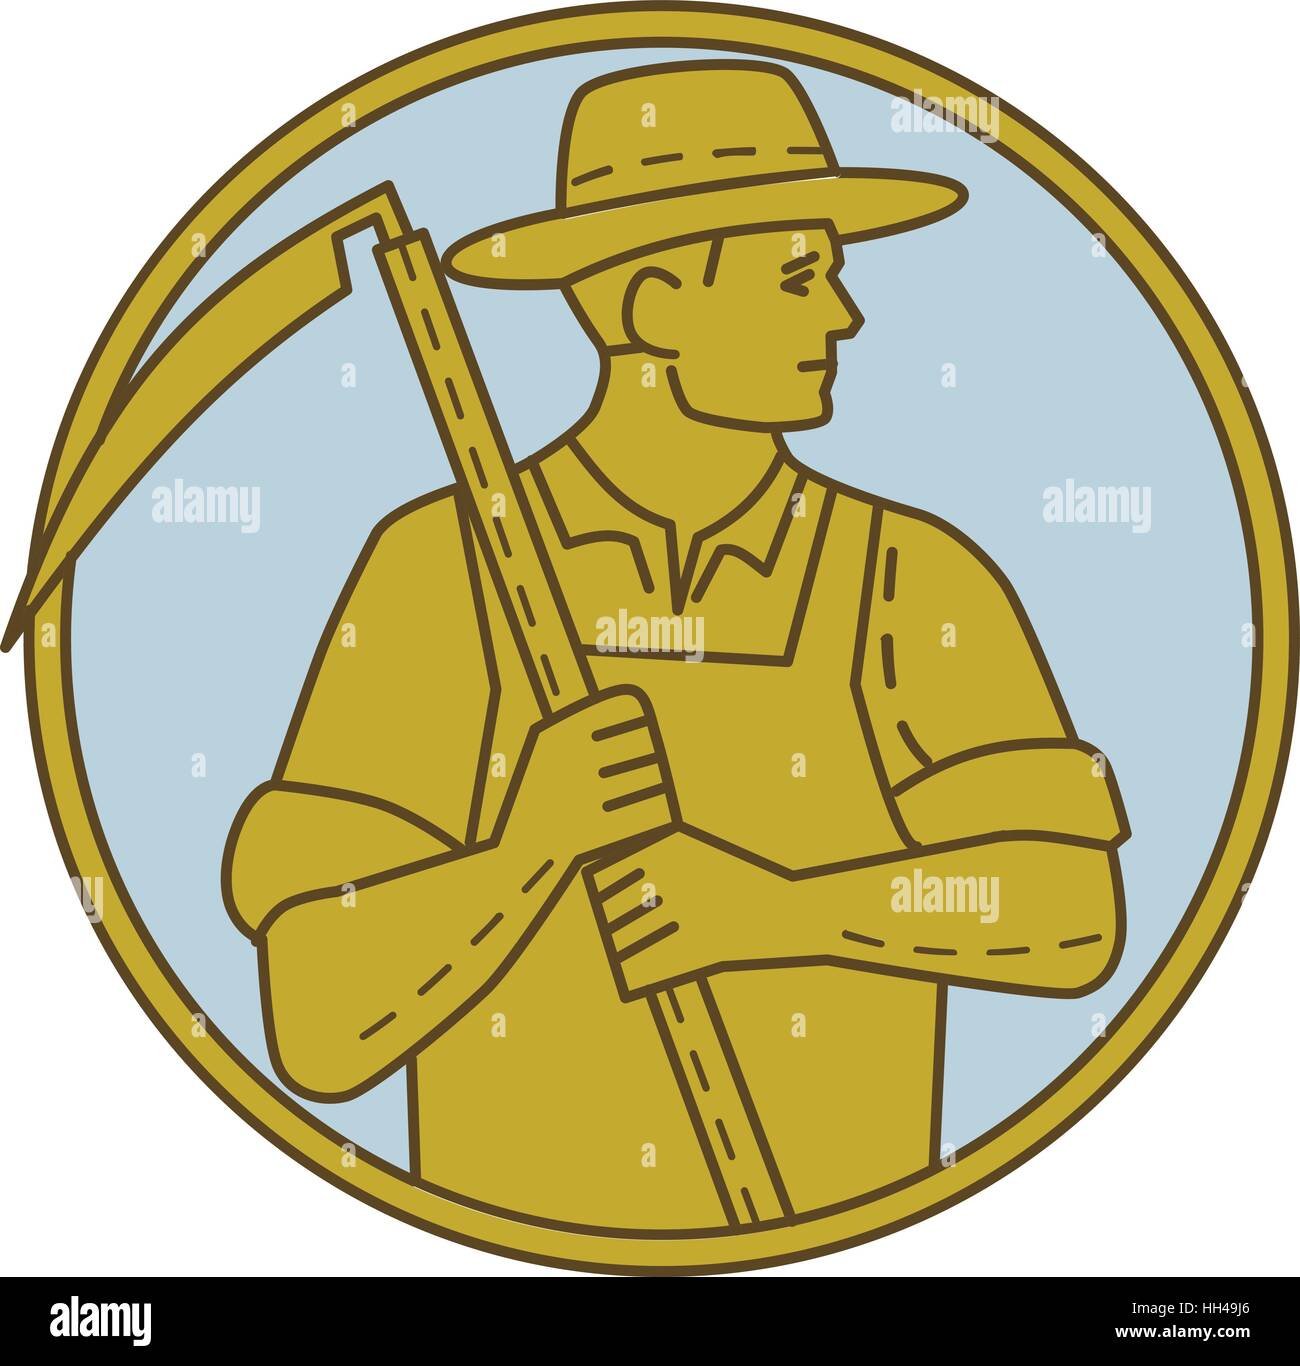 Style ligne mono illustration d'un agriculteur biologique farm worker holding à la faux sur le côté situé à l'intérieur du cercle sur fond isolé. Illustration de Vecteur